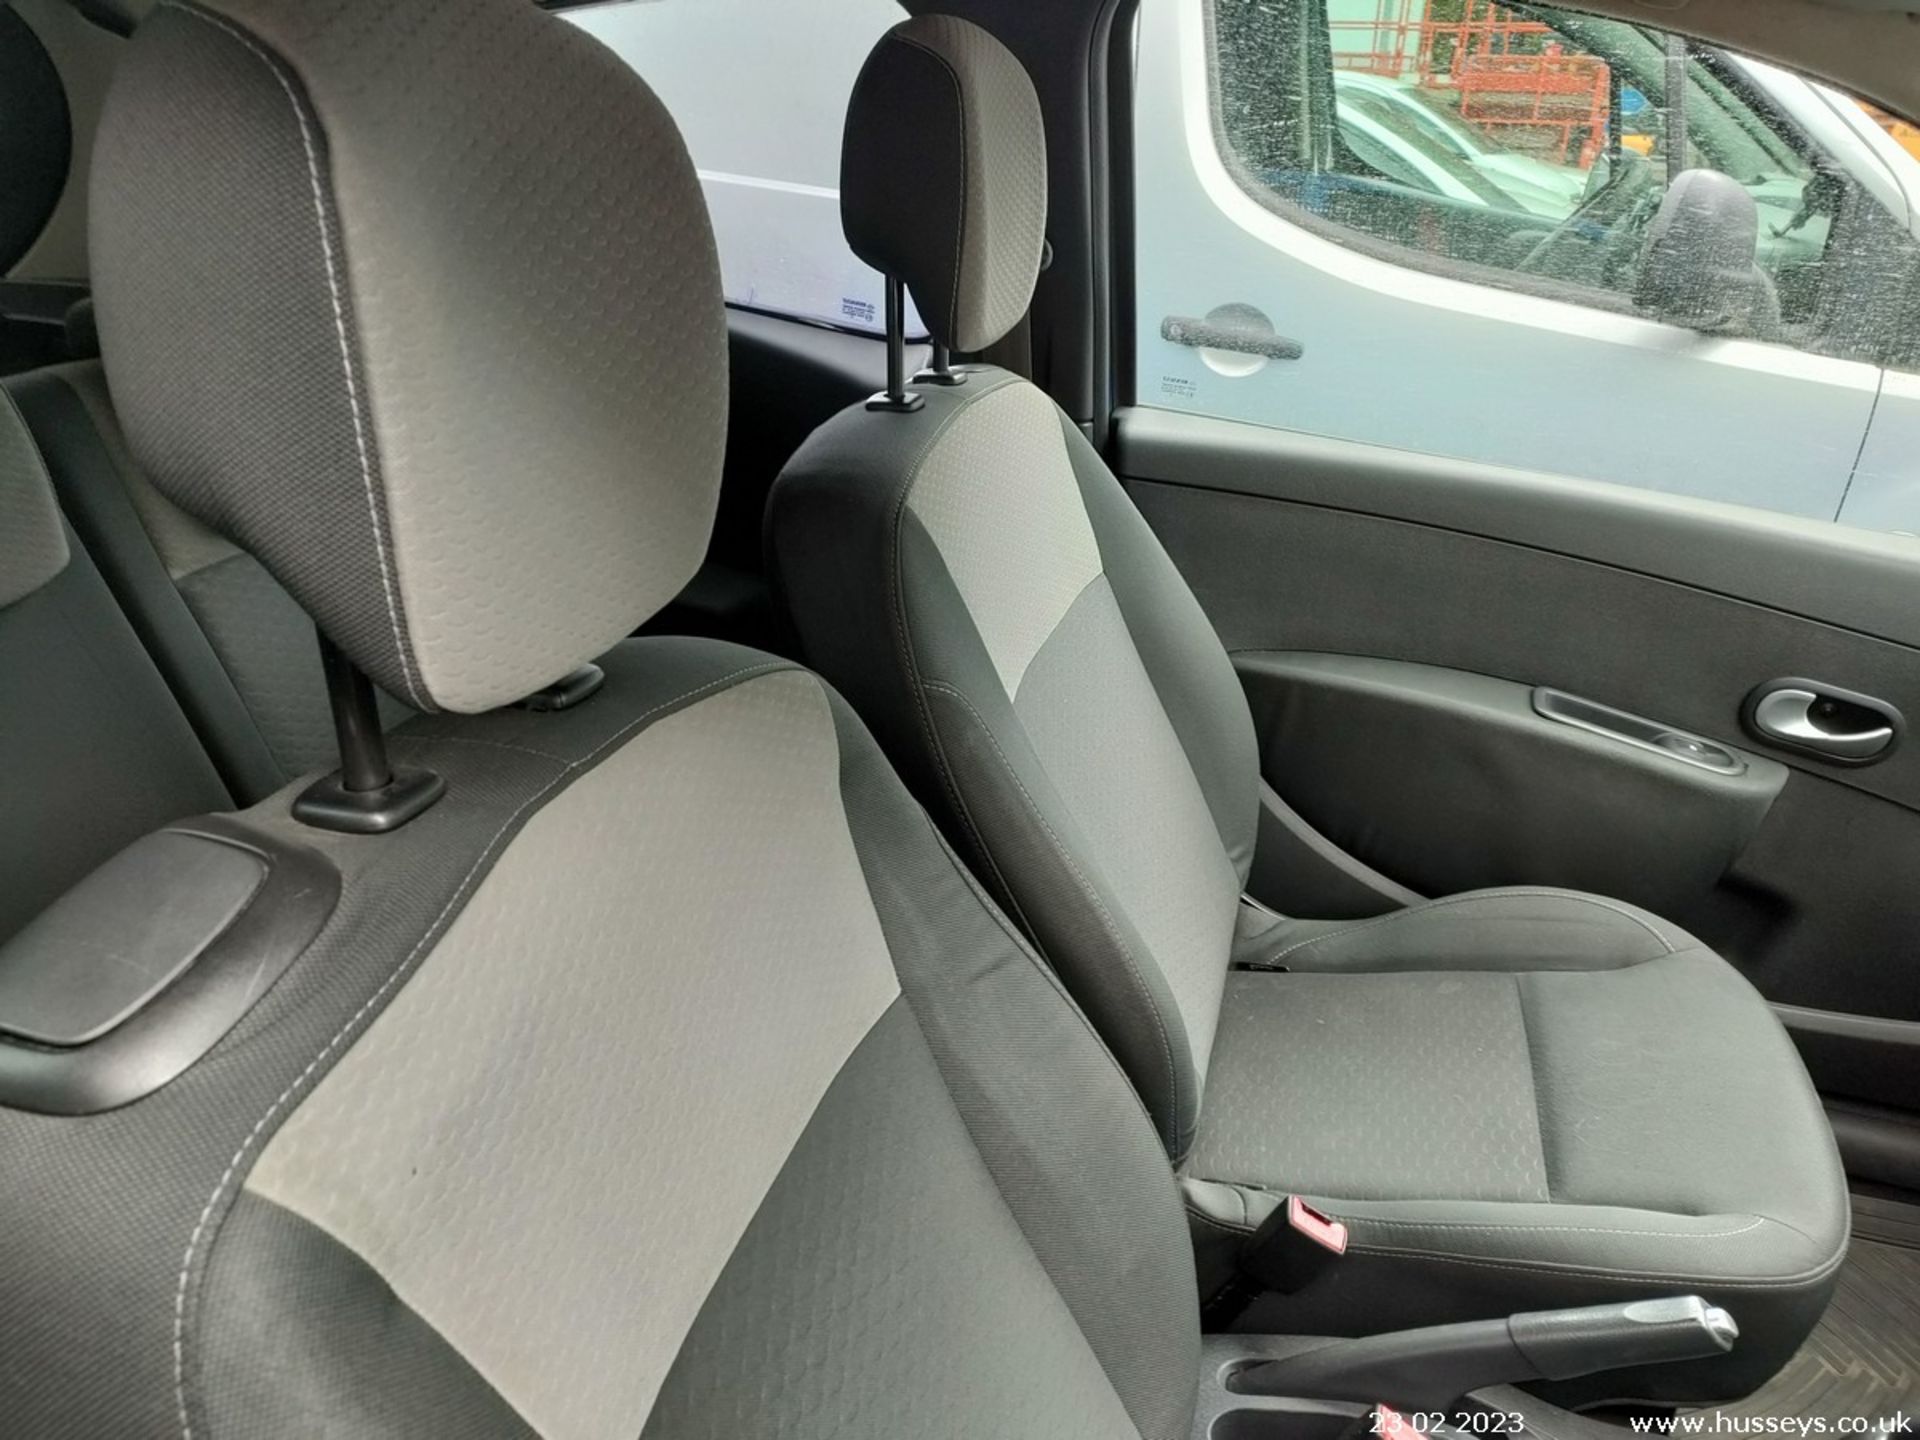 09/59 RENAULT CLIO I-MUSIC 16V - 1149cc 3dr Hatchback (Blue, 115k) - Image 19 of 20